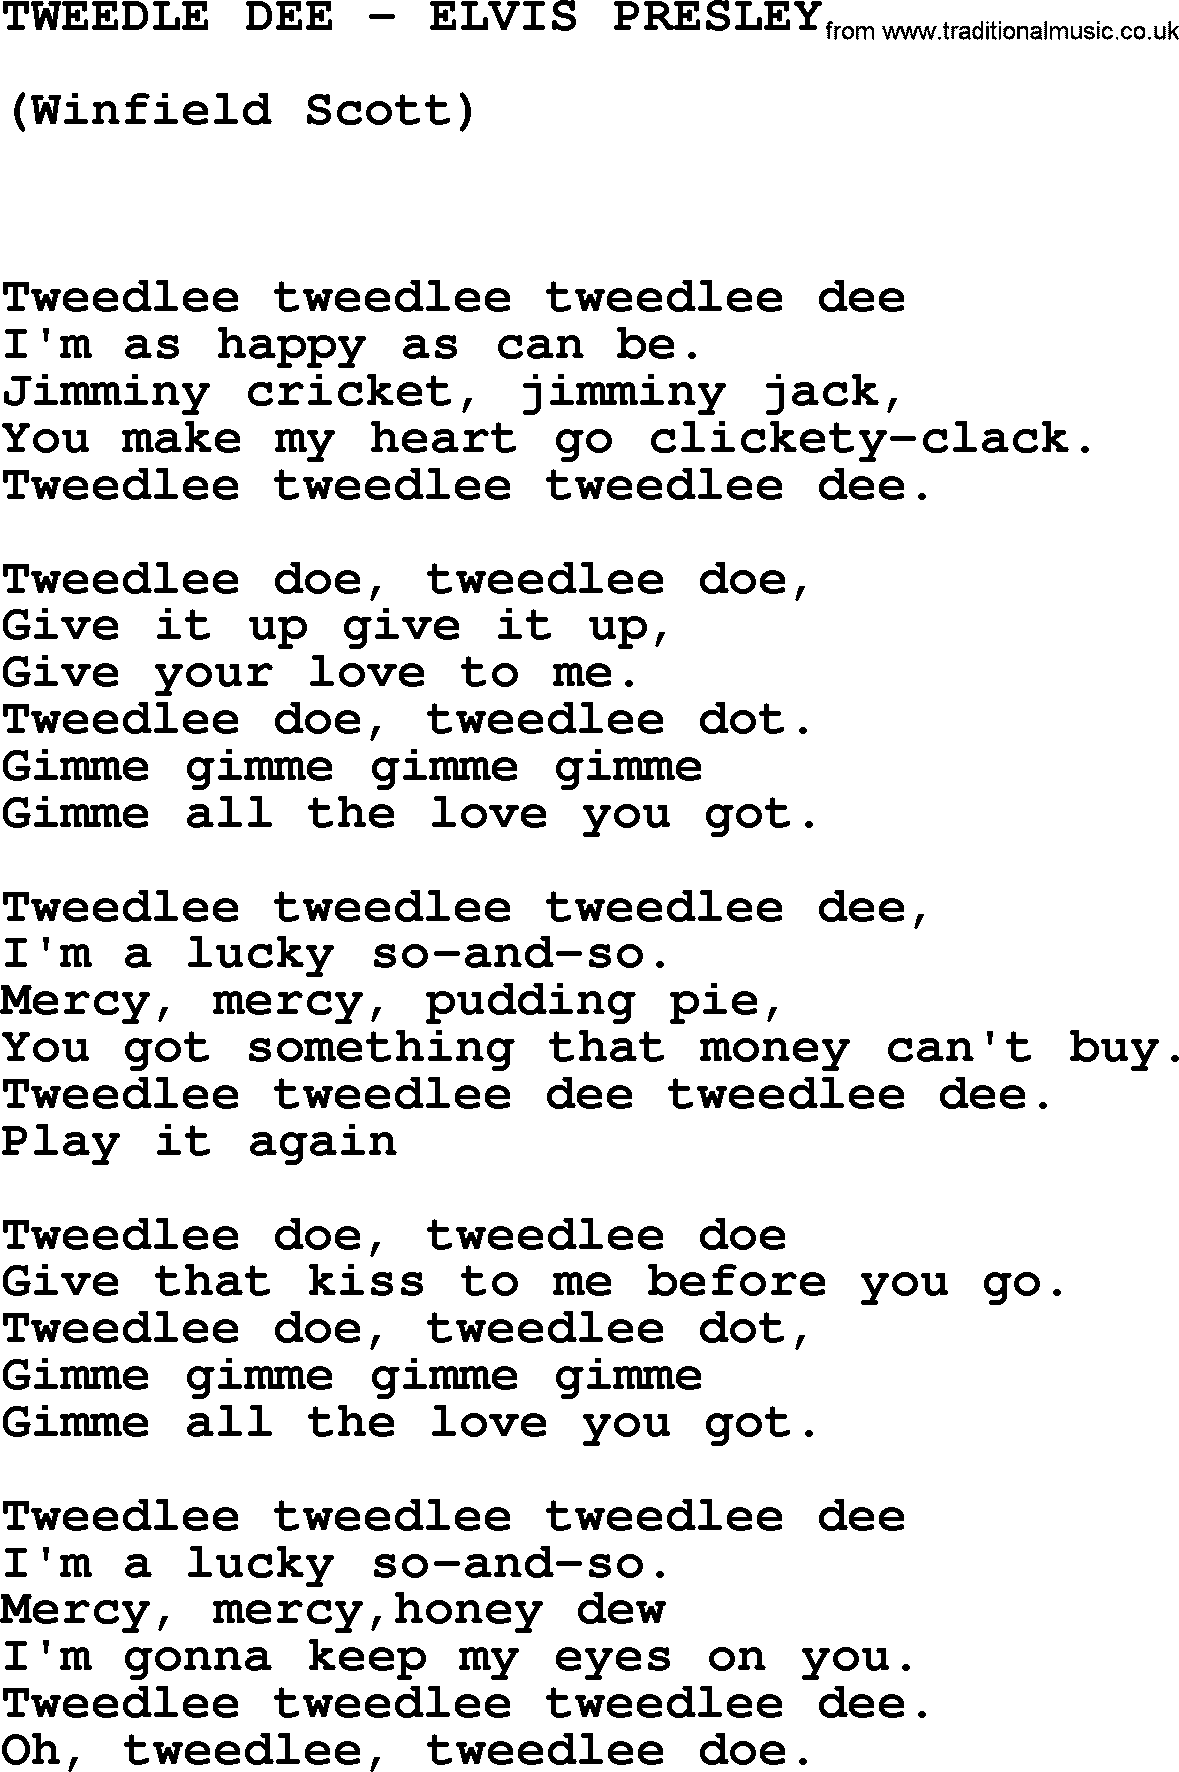 Elvis Presley song: Tweedle Dee-Elvis Presley-.txt lyrics and chords